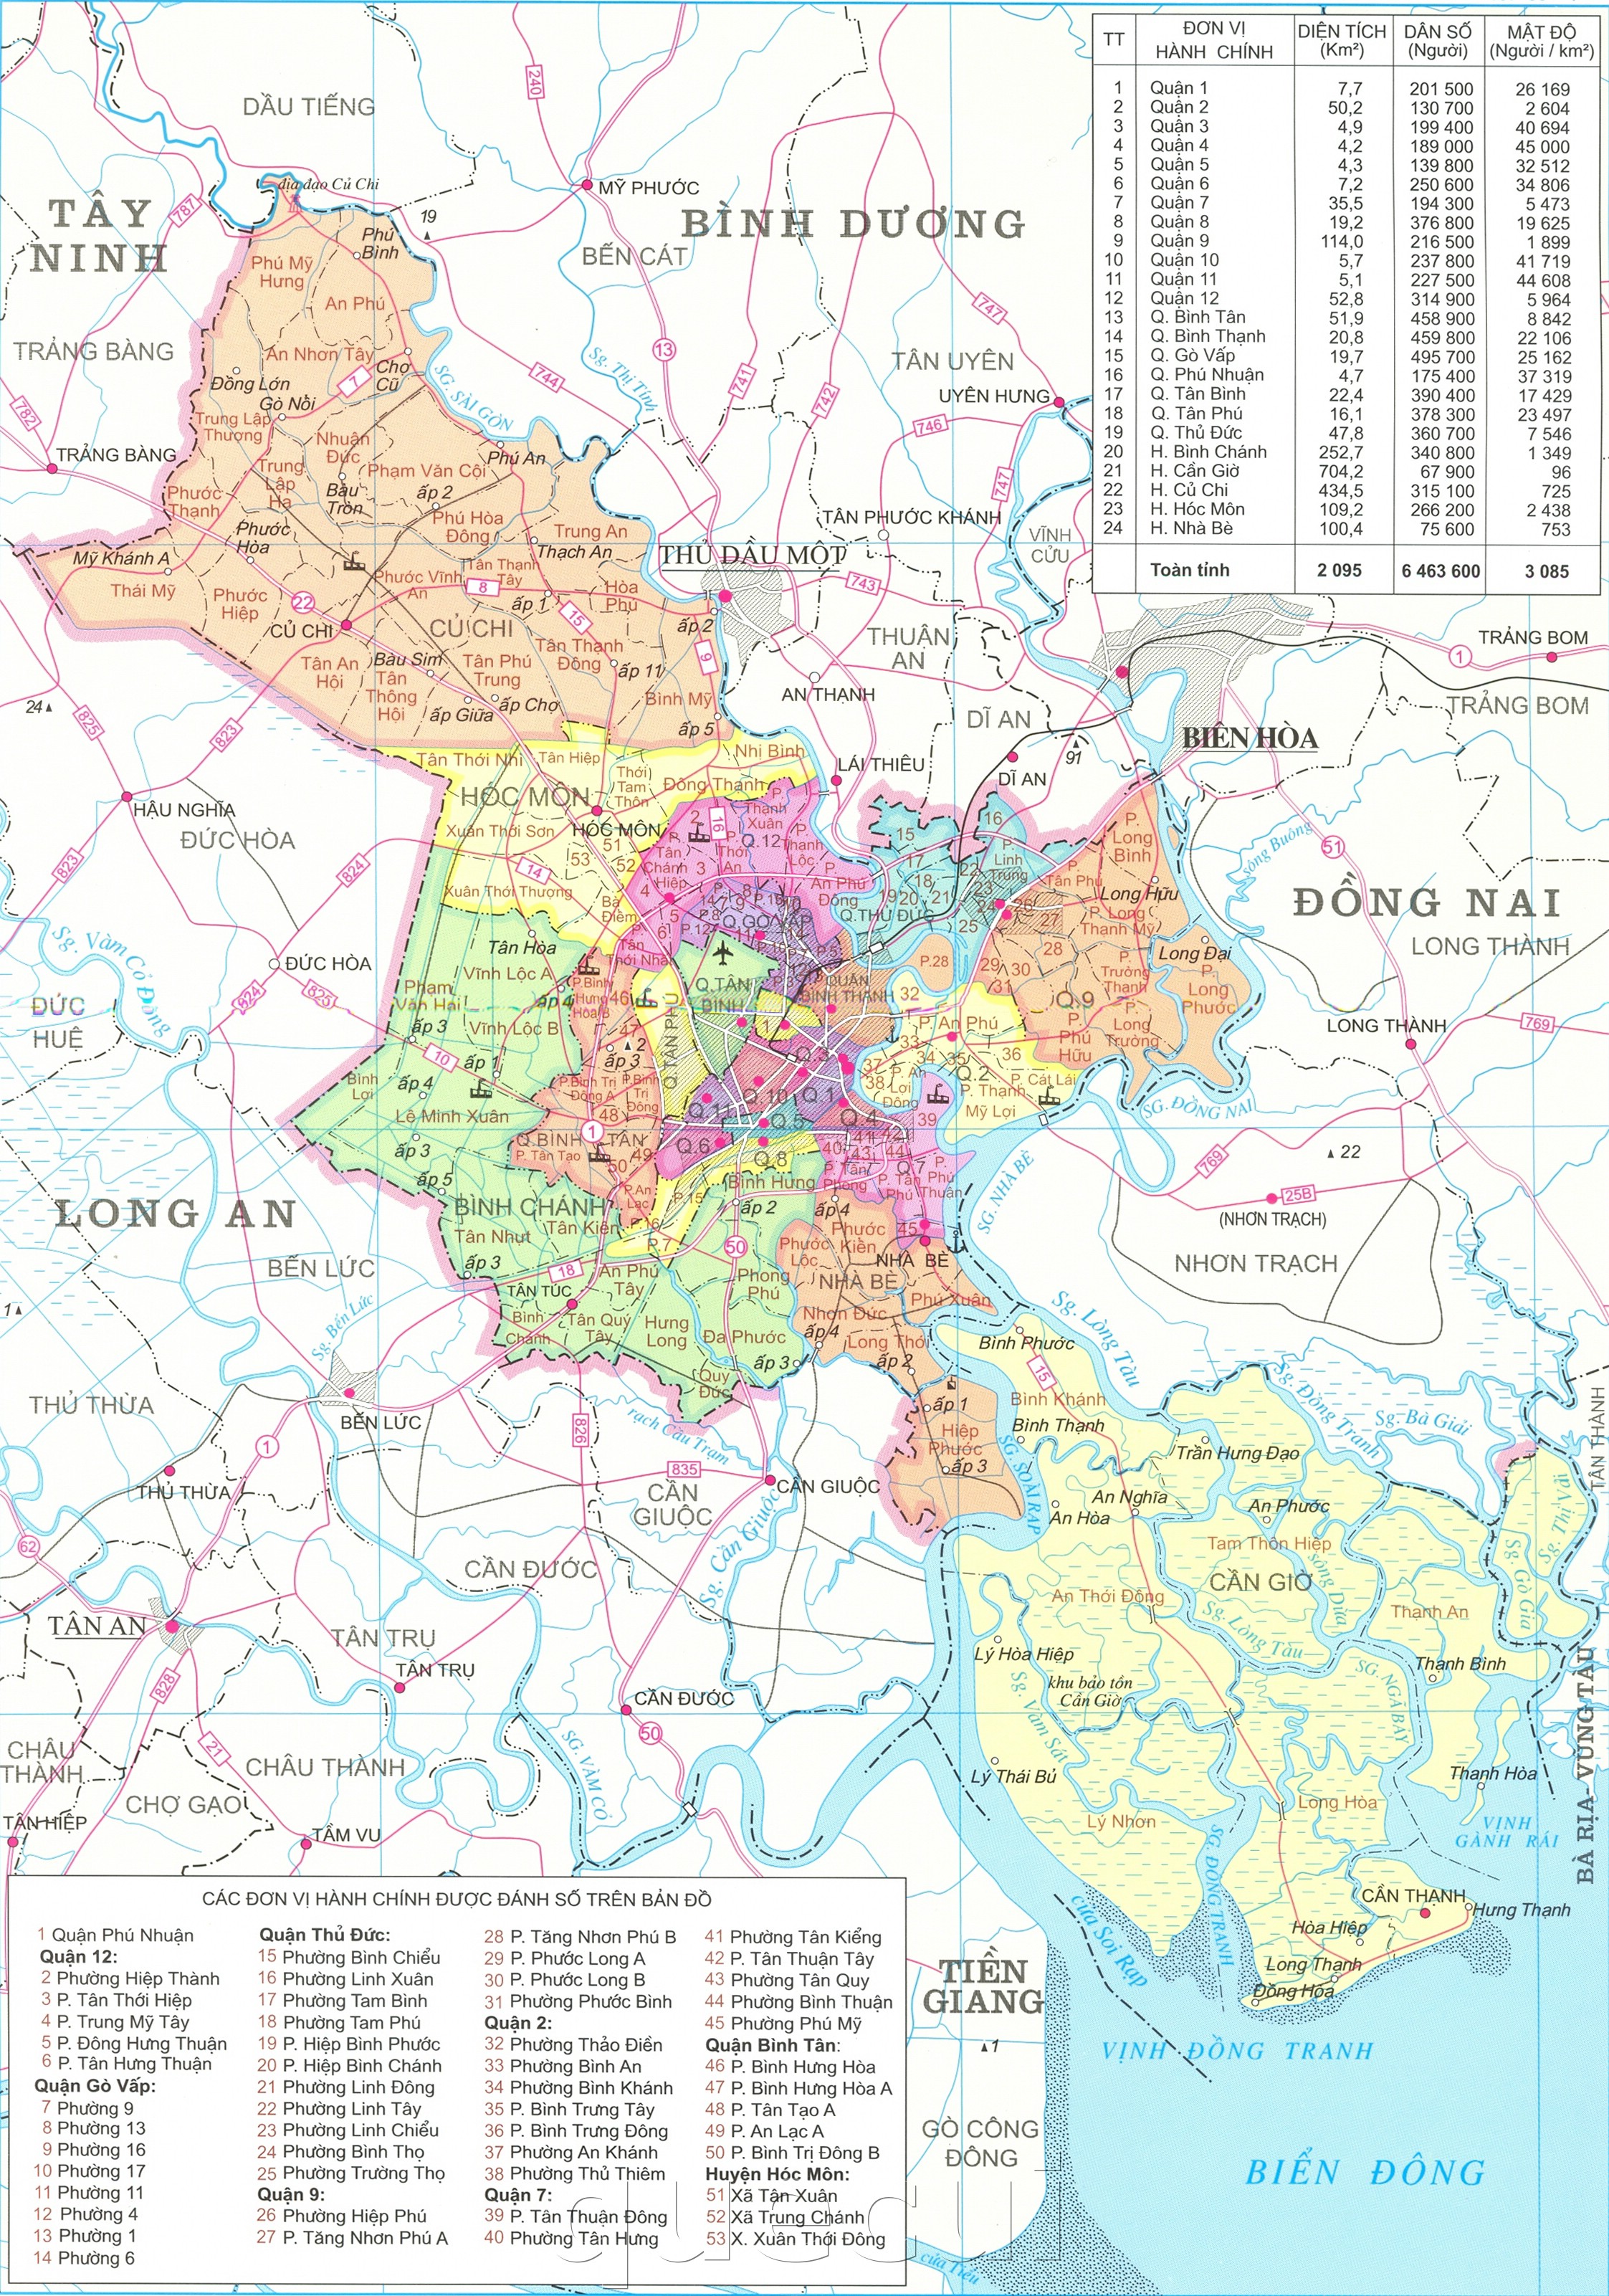 Sơ đồ các quận của thành phố Hồ Chí Minh năm 2020